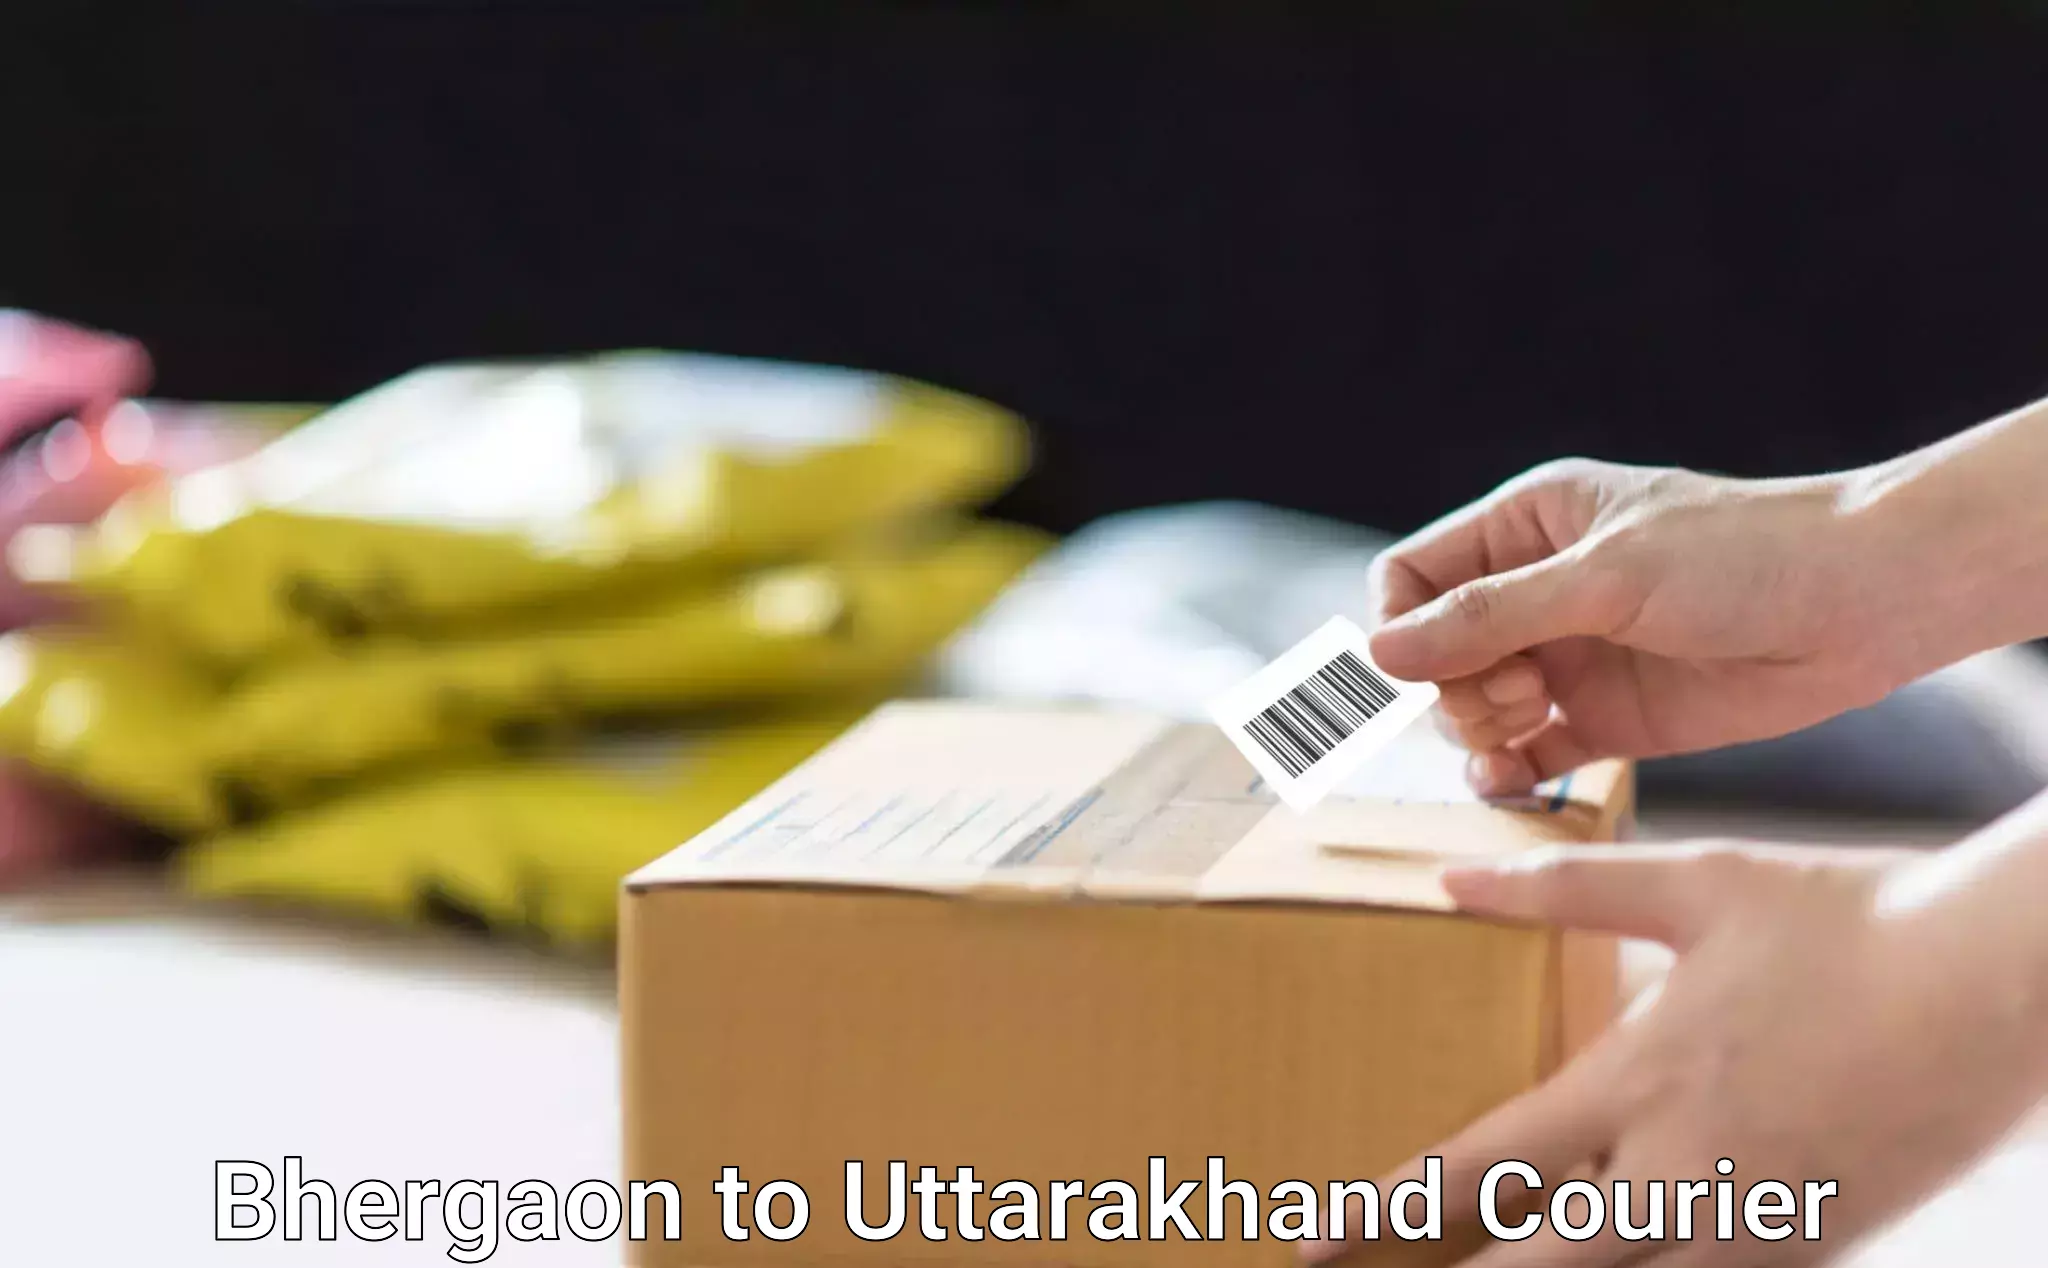 Doorstep delivery service Bhergaon to Uttarakhand